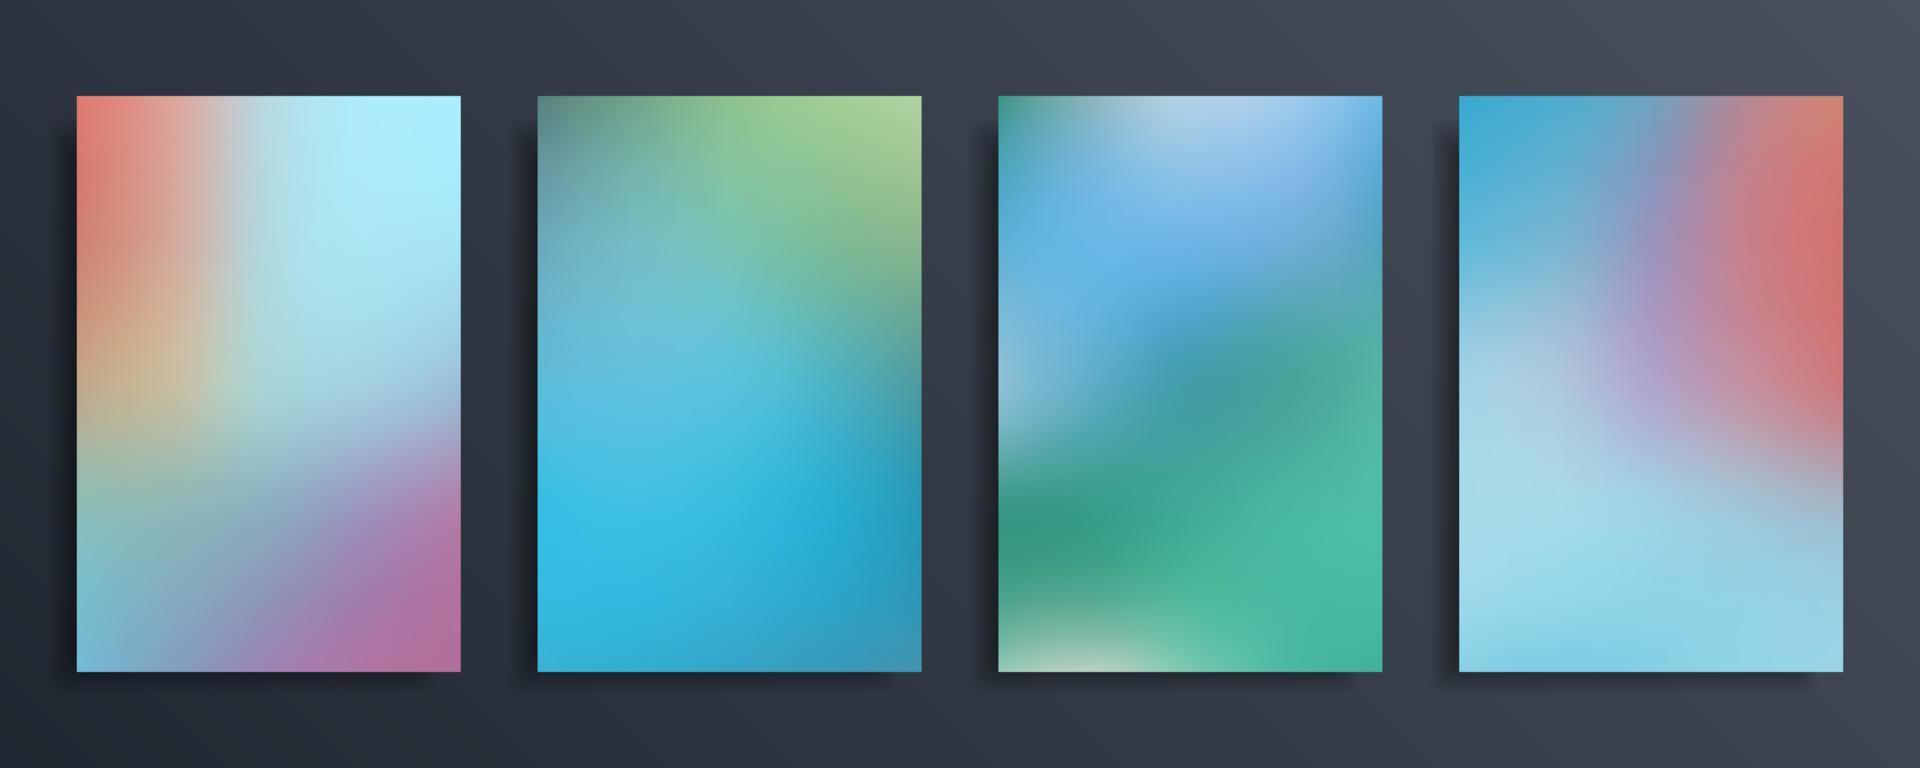 establezca un fondo borroso degradado abstracto en colores vivos y brillantes. desenfoque de fondo de pantalla vectorial. vector